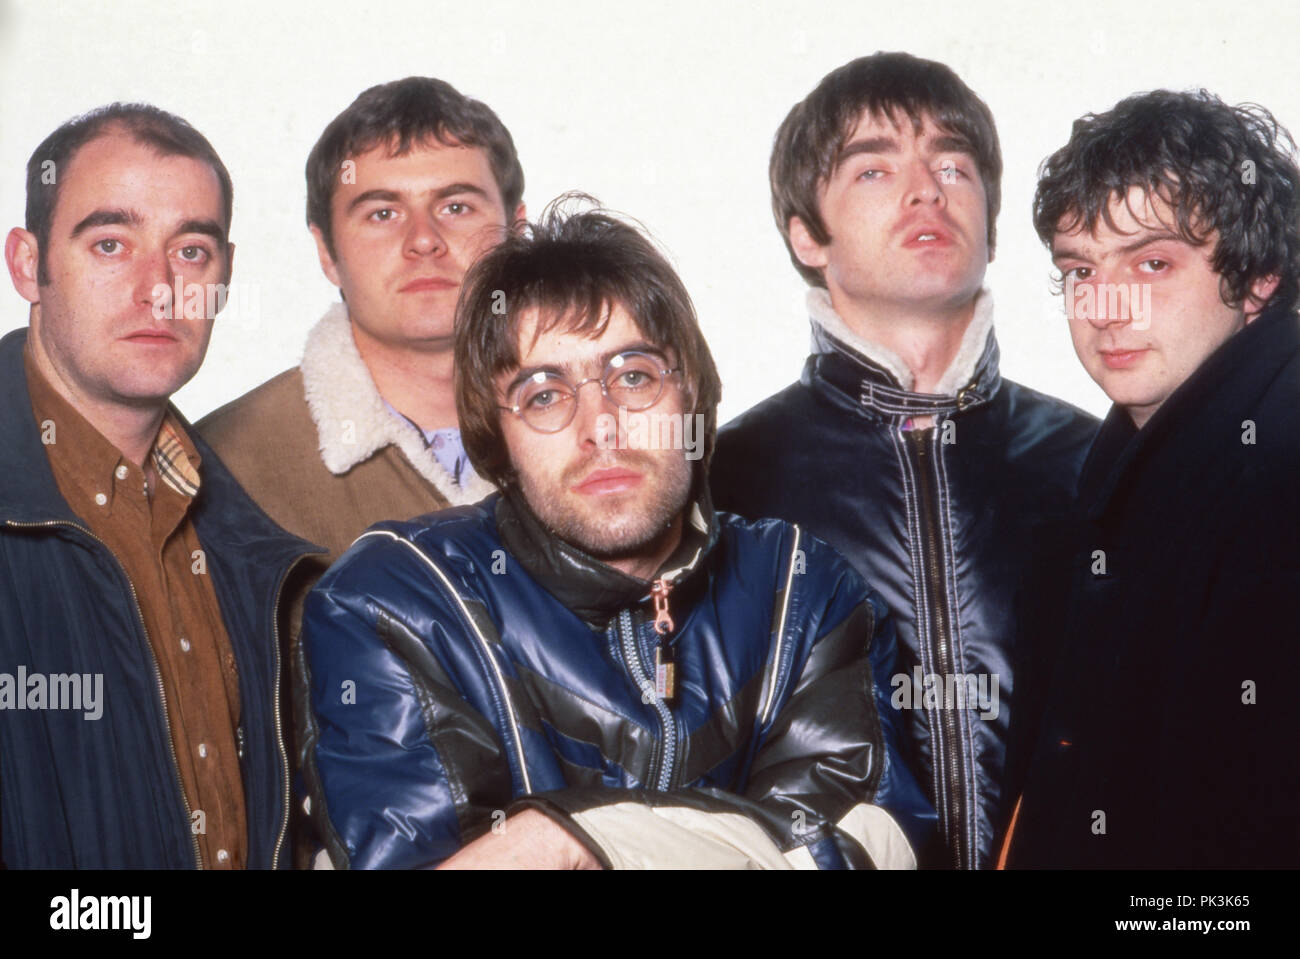 "Oasis", britische Band, in München, Deutschland 1996. Britische Band "Oasis" in München, Deutschland 1996 | Verwendung weltweit Stockfoto